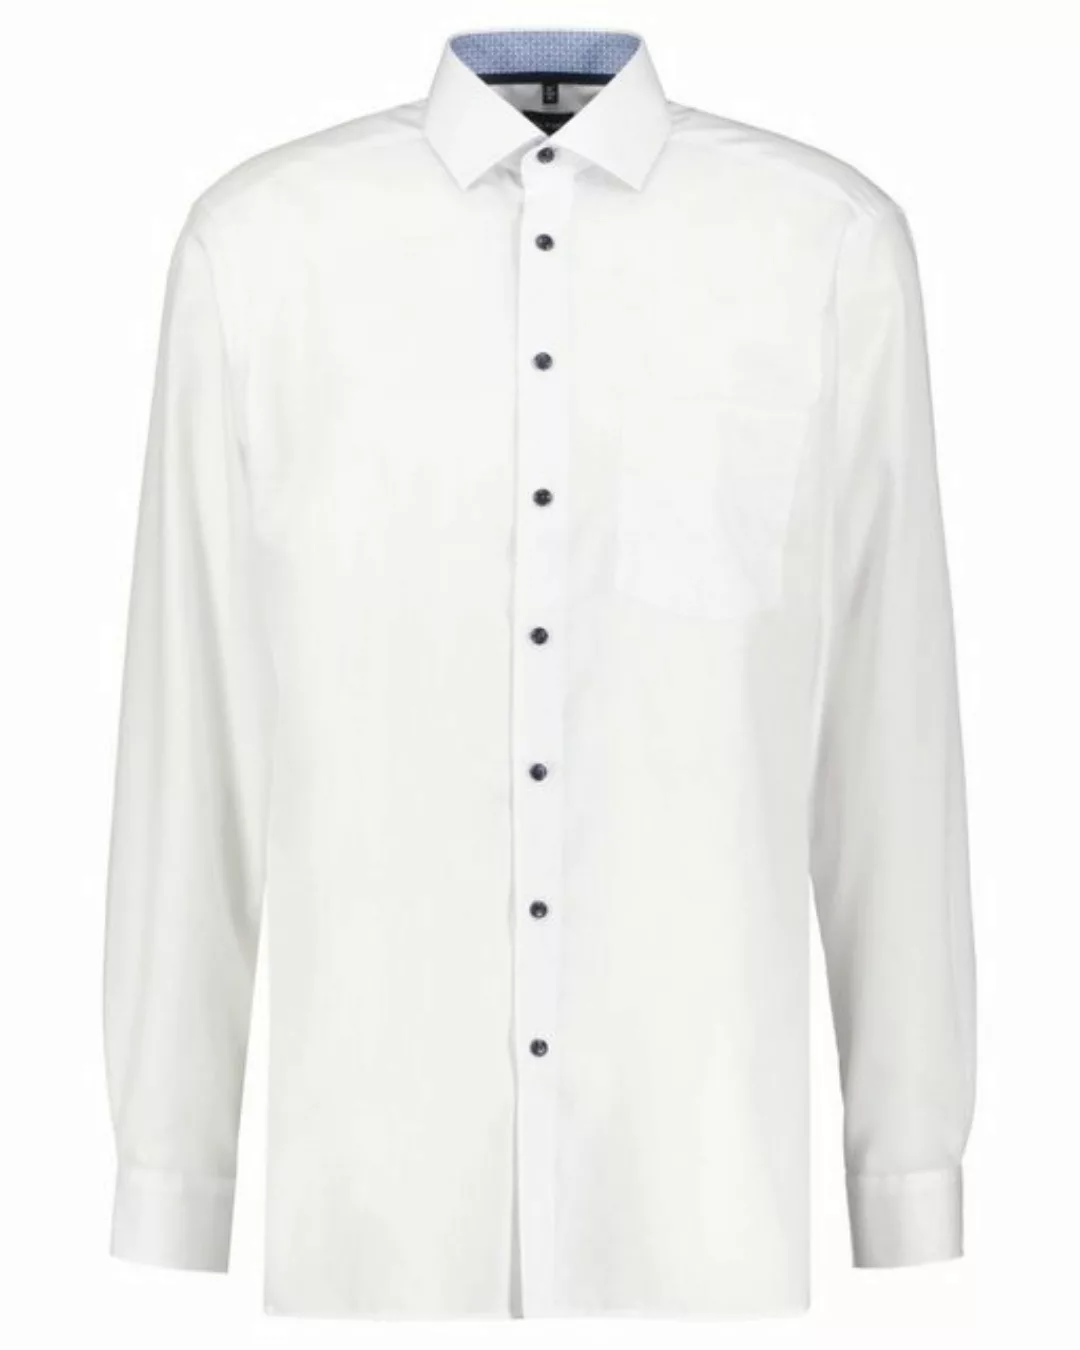 OLYMP Blusenshirt 0743/69 Hemden günstig online kaufen